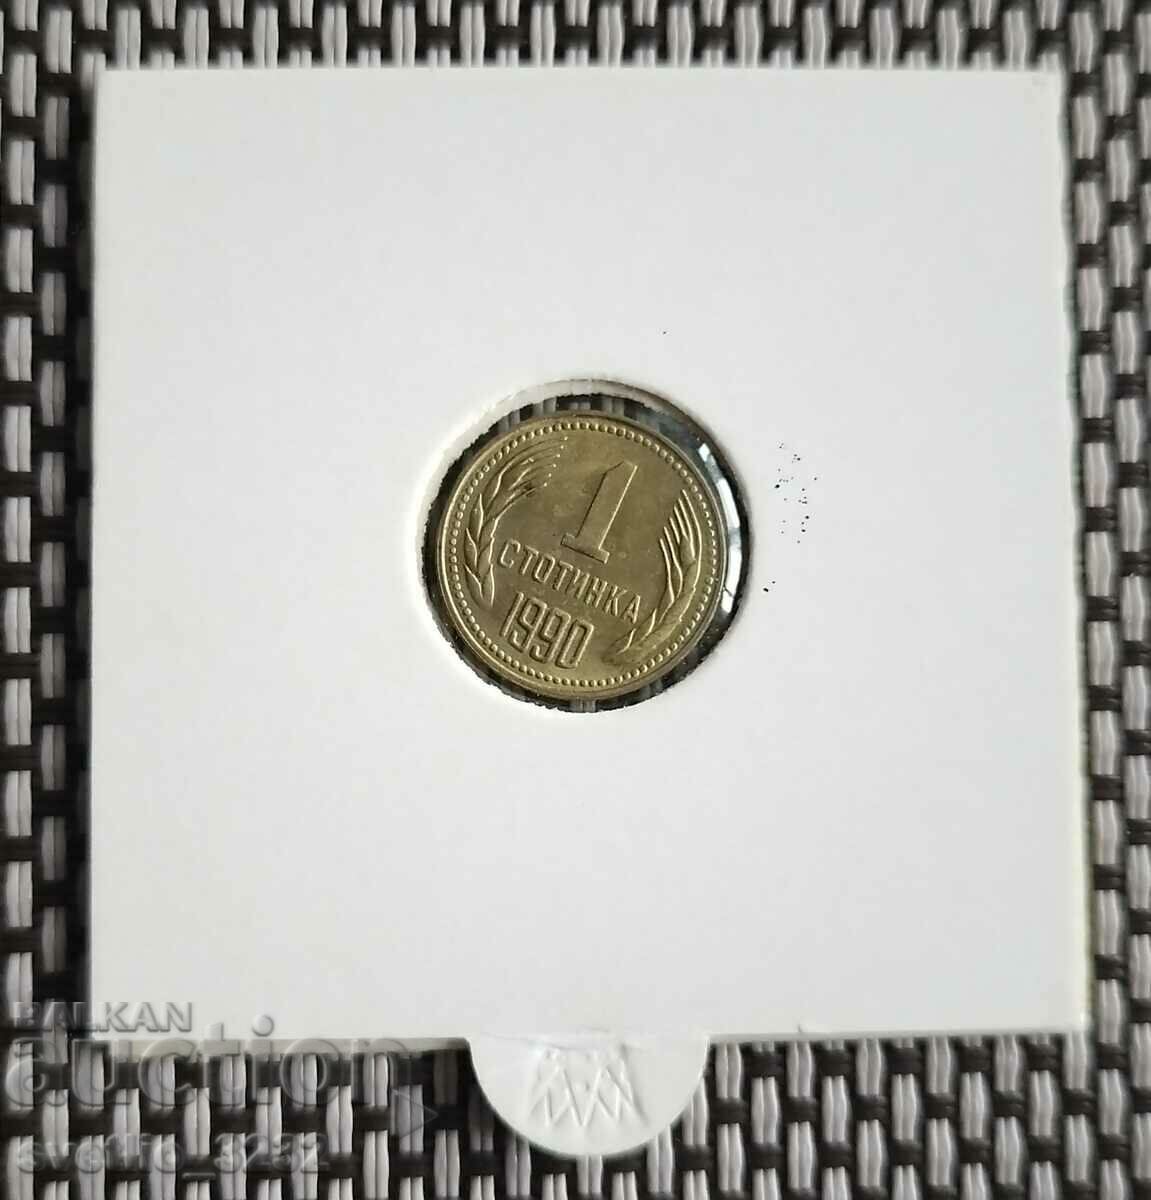 1 стотинка 1990